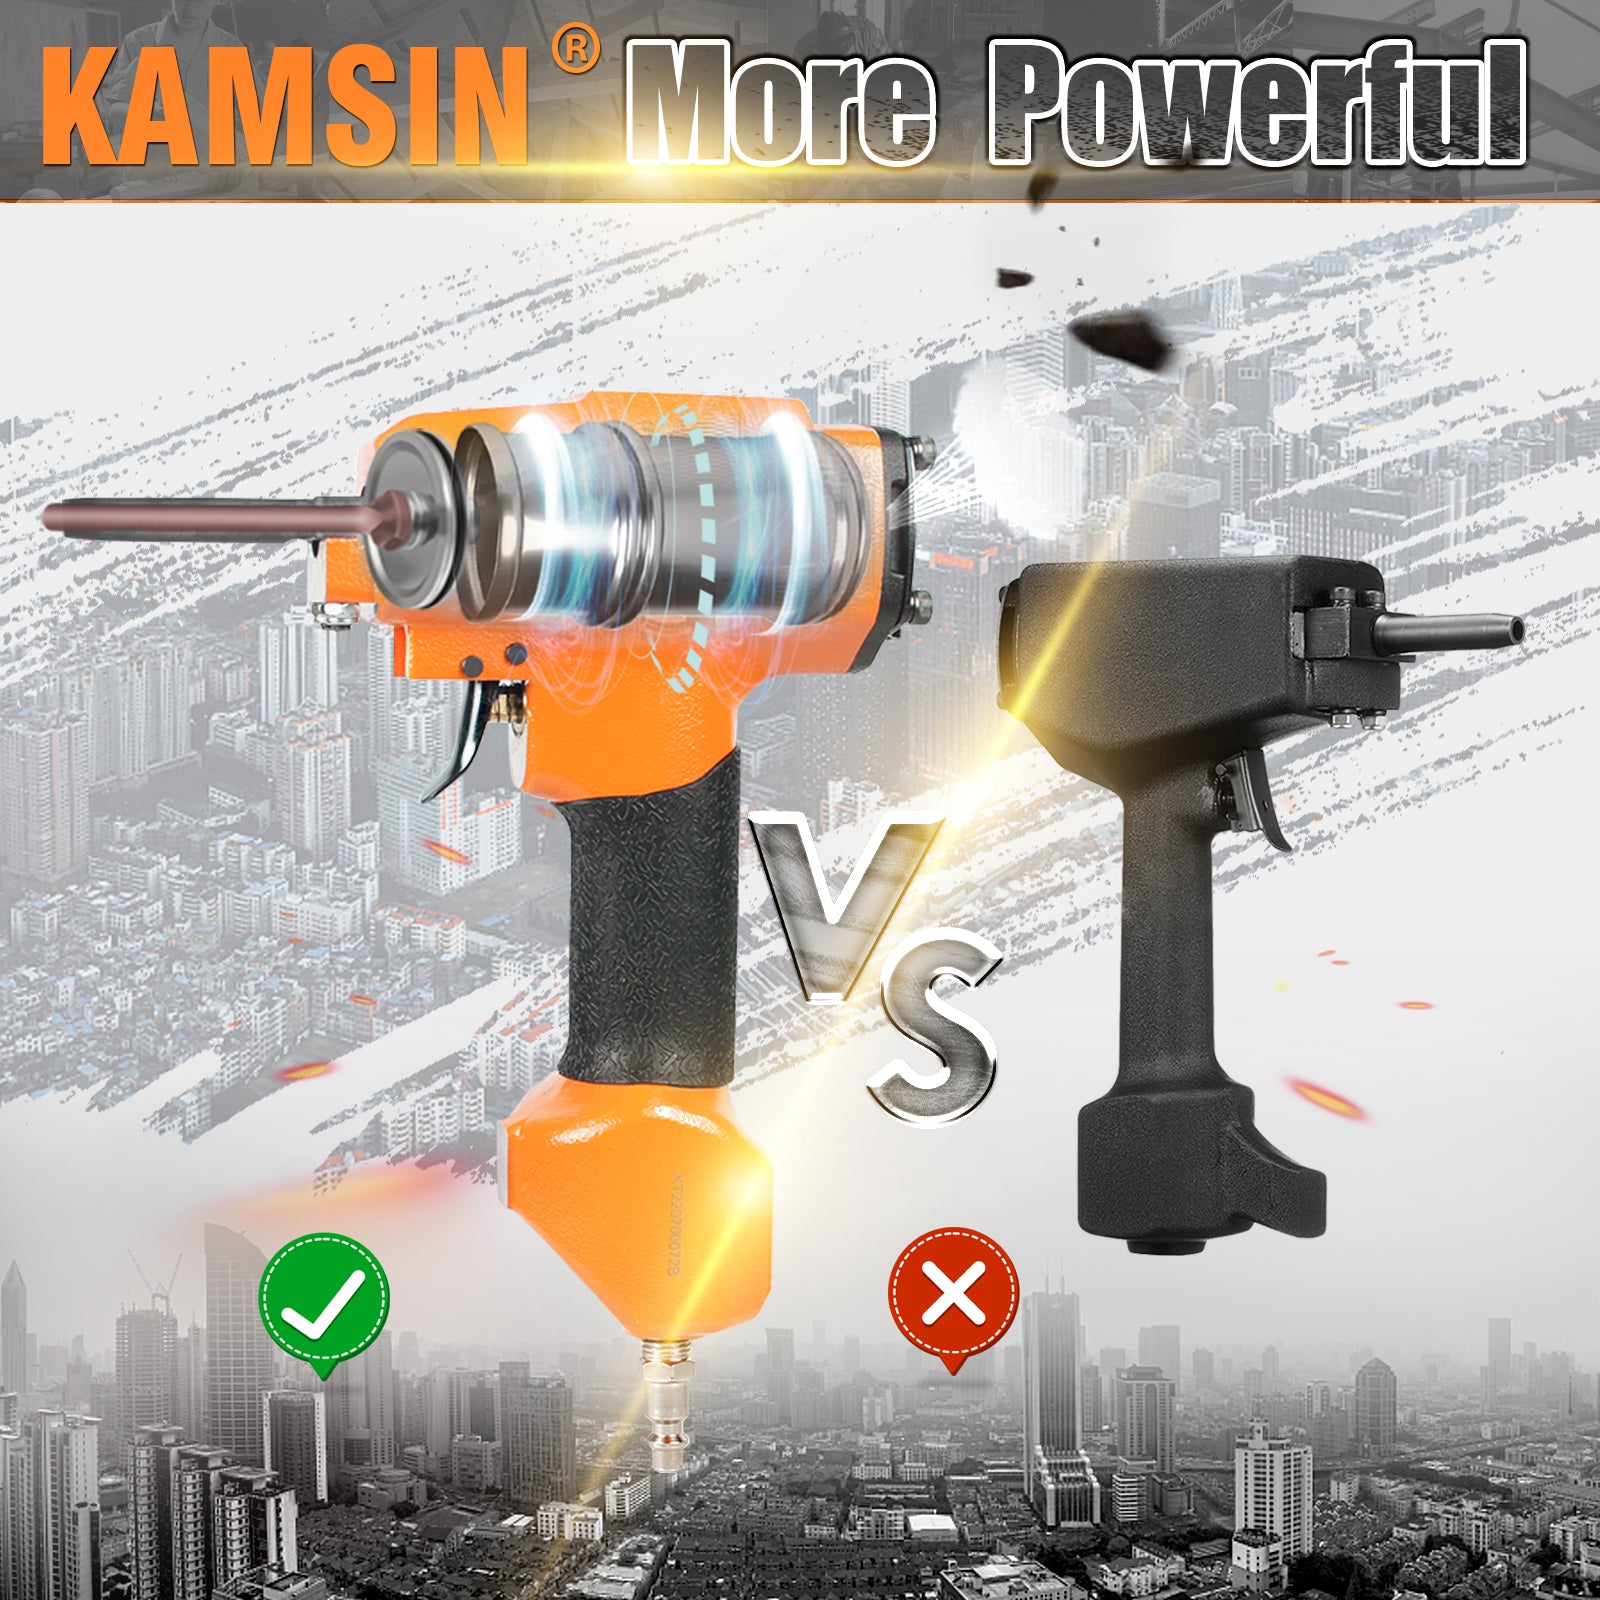 KAMSIN KT38 Pneumatic Nail Puller, Air Nails Remover Gun,Professional Punch Nails shank diameter of 3-5 mm (0.118